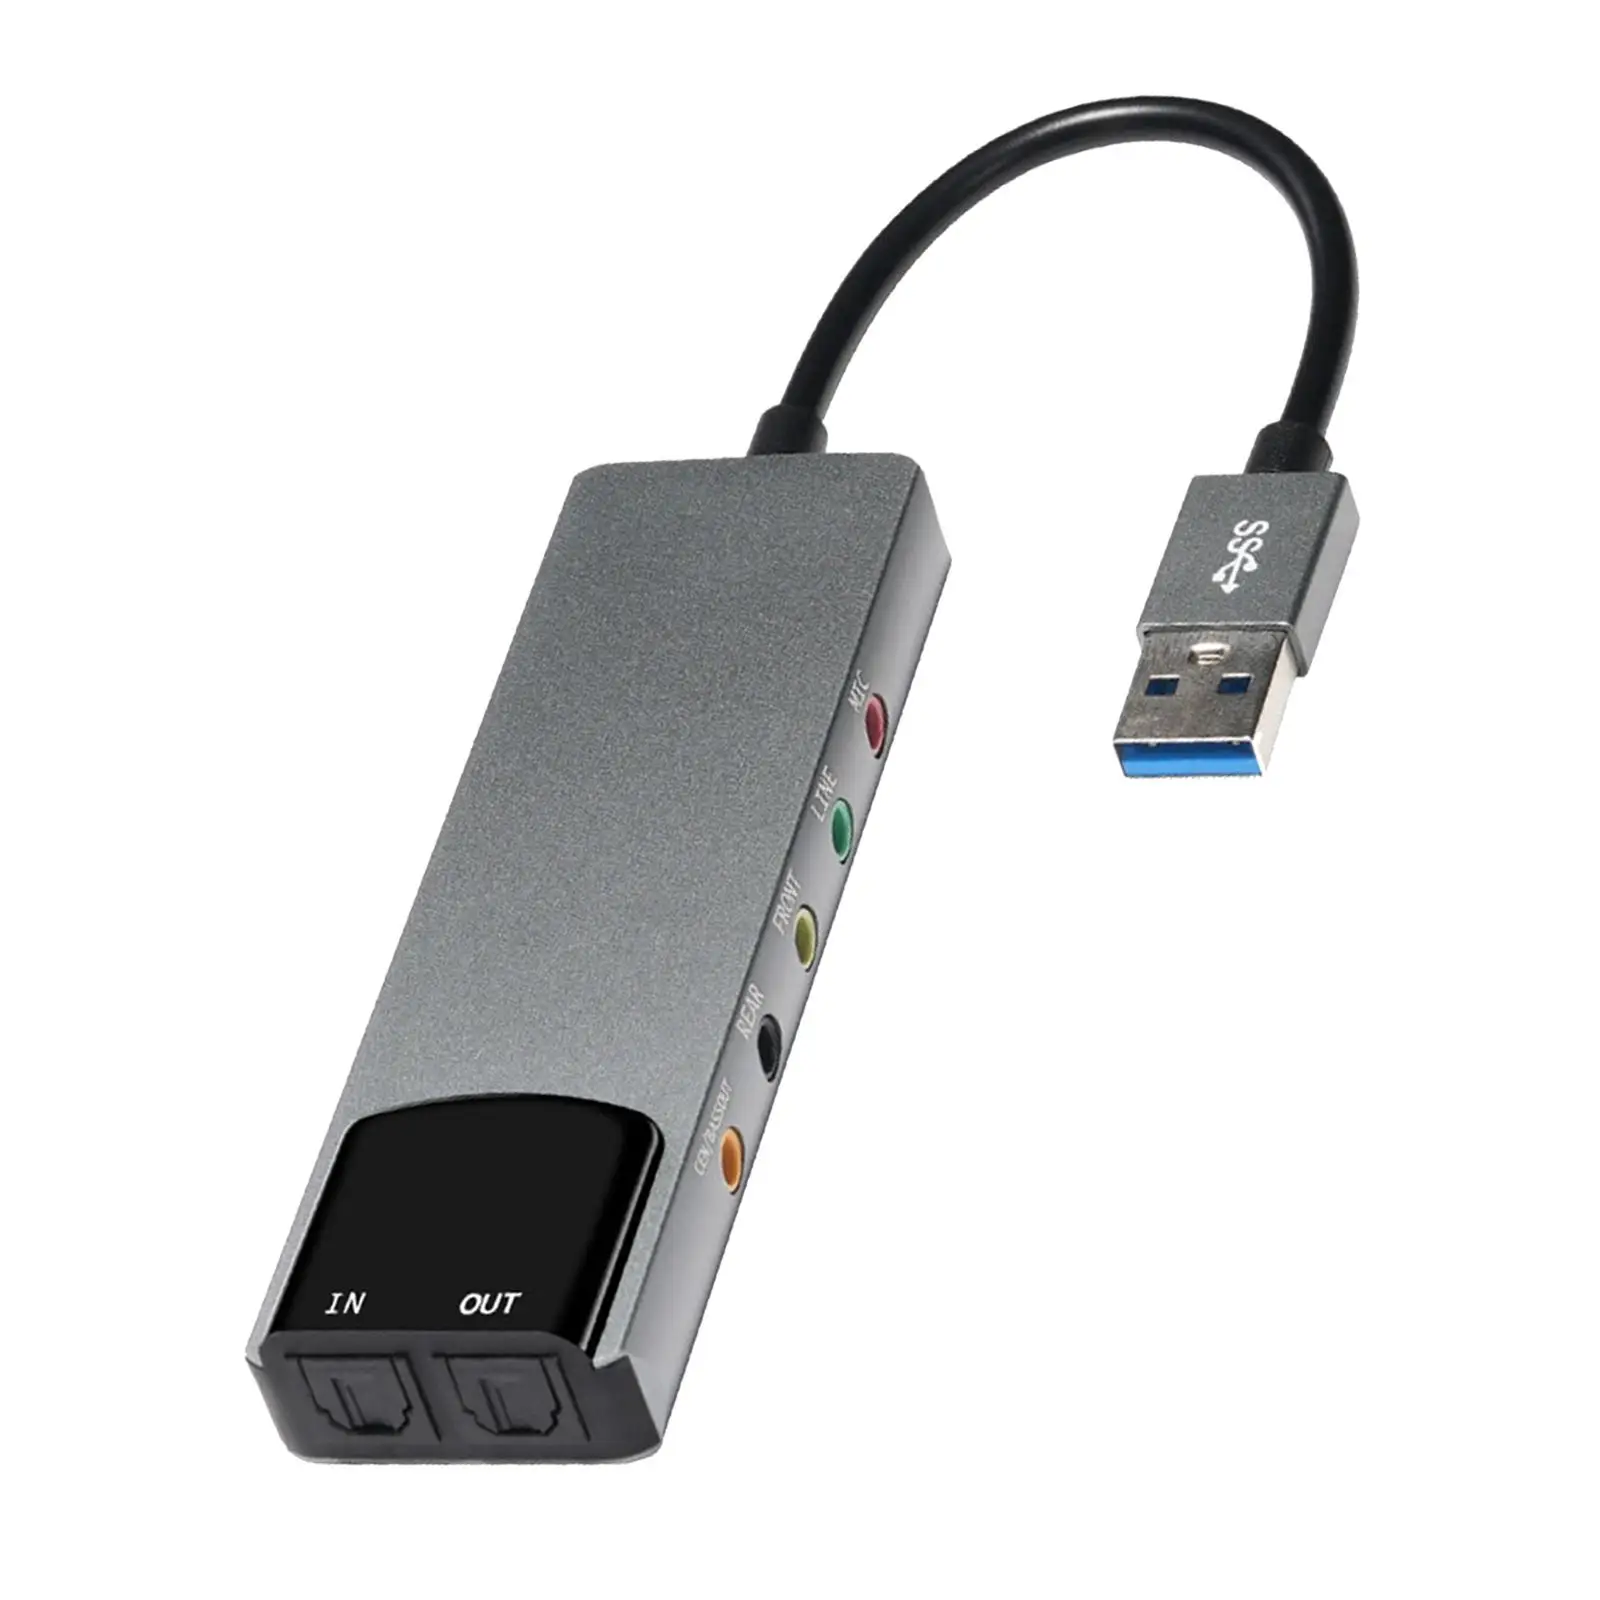 USB Sound Card Adapter High Performance External Audio Converter External Audio Adapter USB Audio Adapter for Laptops Desktops